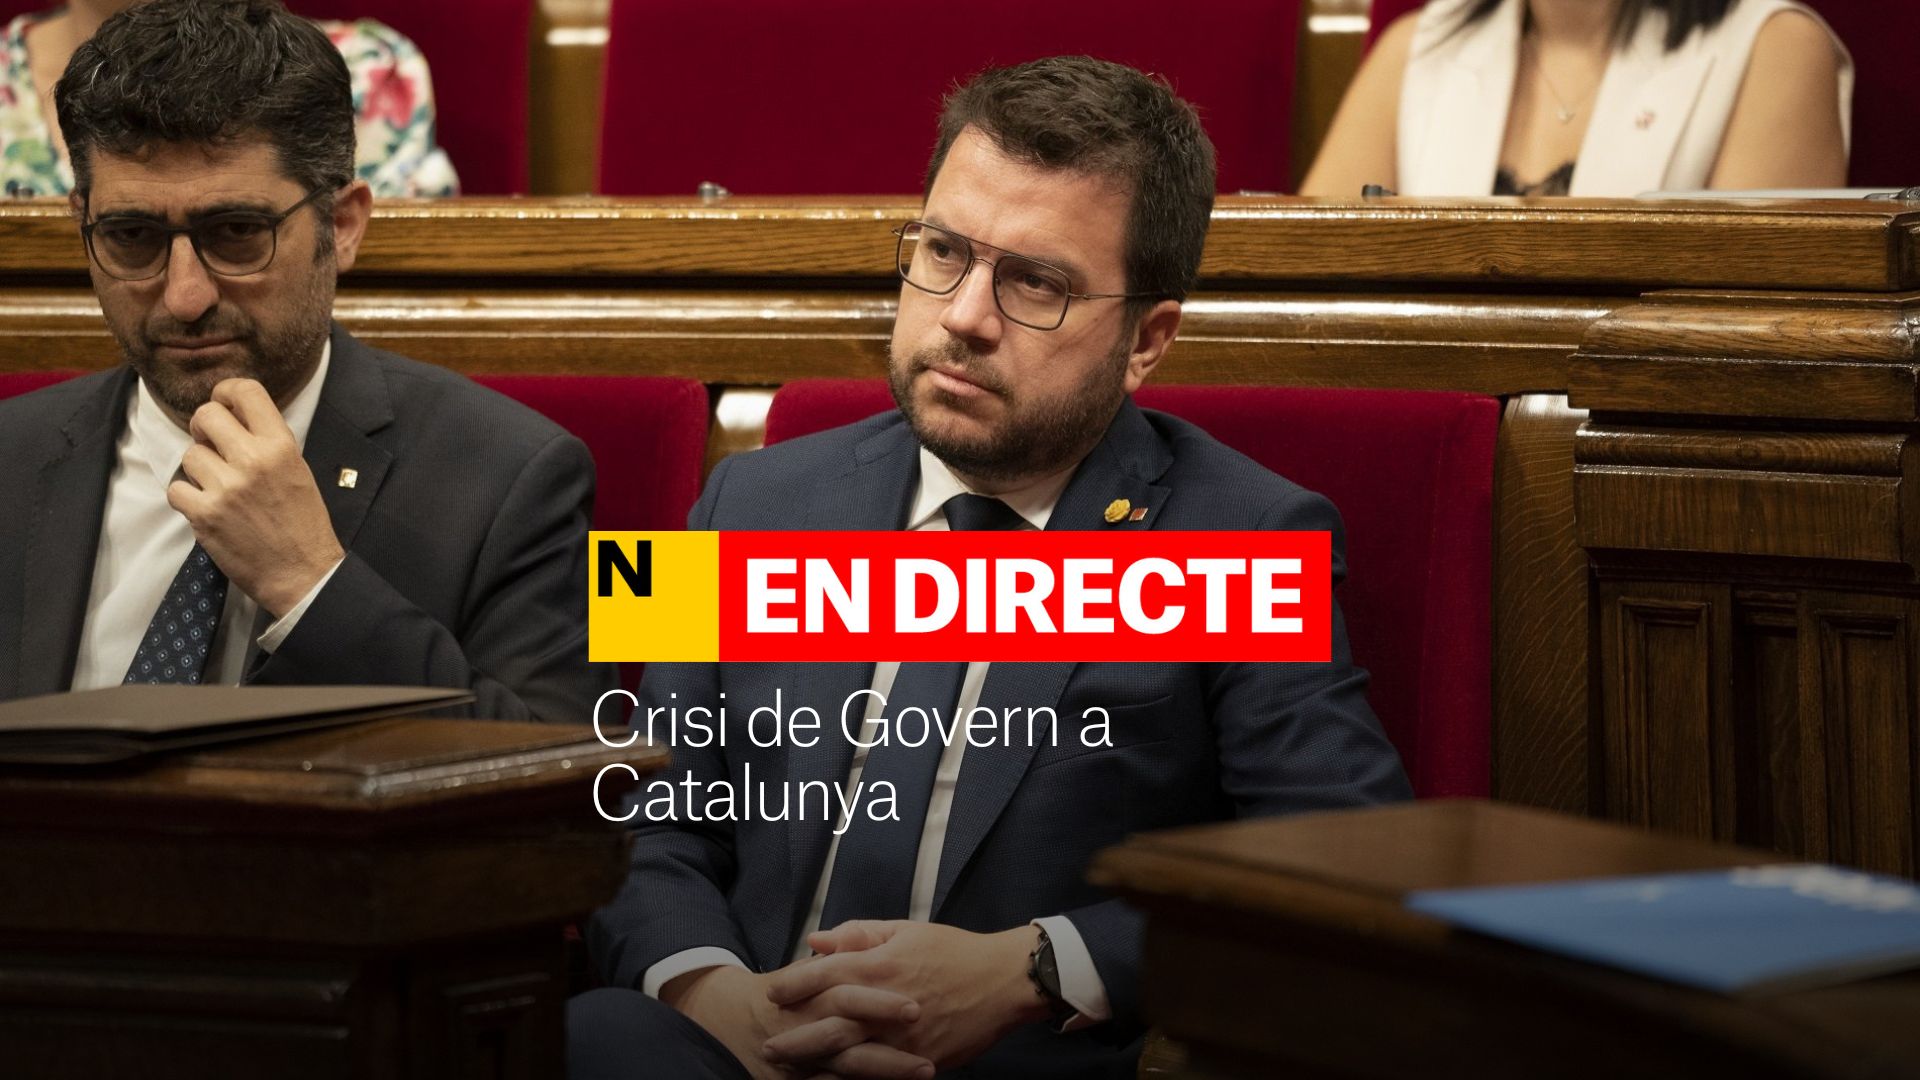 Crisis de Govern en Catalunya, última hora | Termina el debate de política general en medio de la tensión entre ERC y Junts